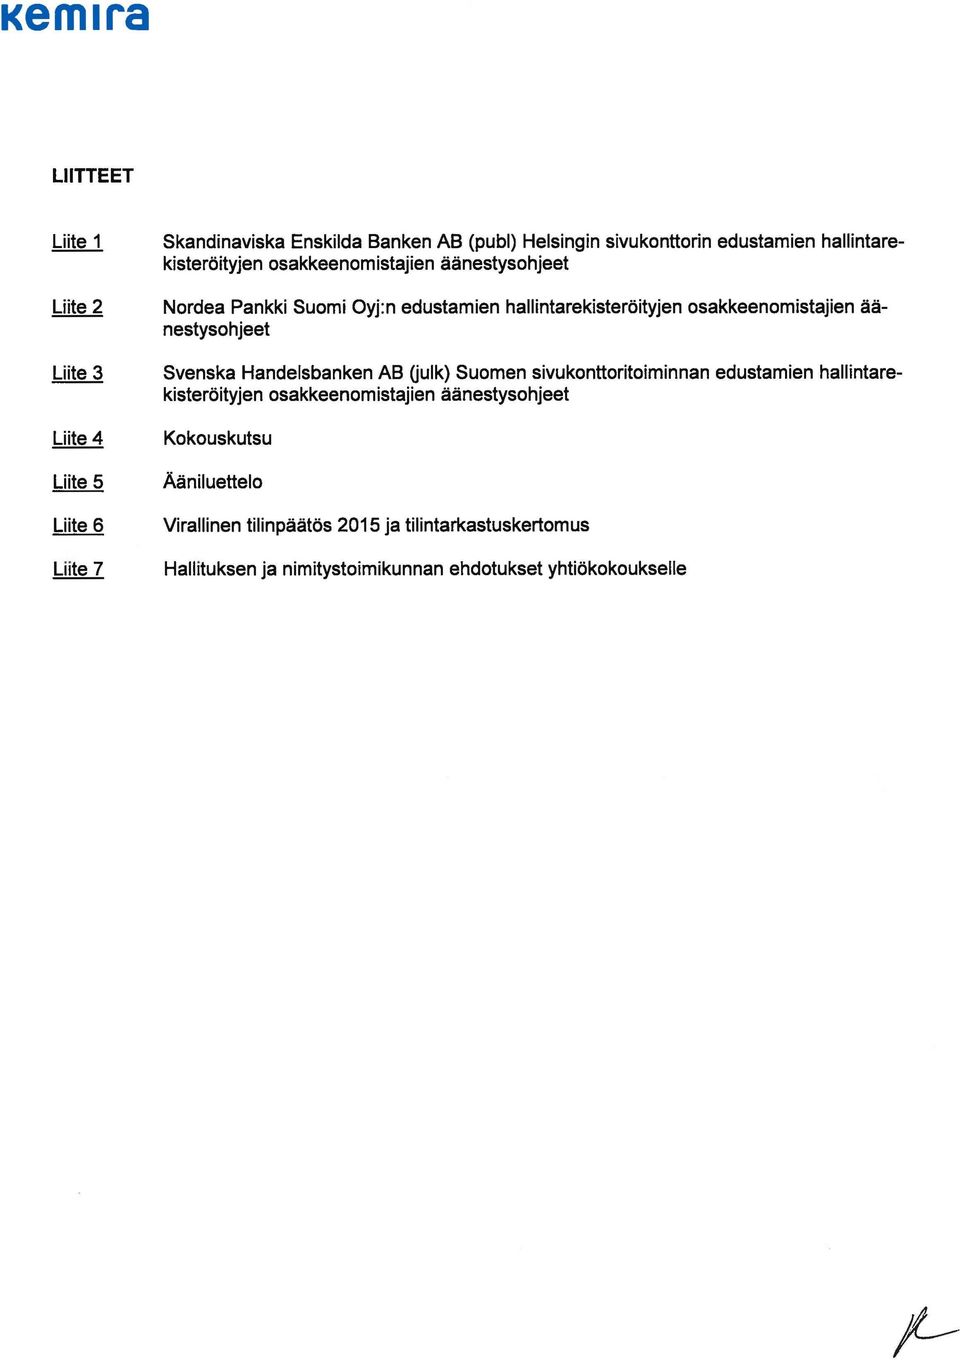 Svenska Handelsbanken AB Oulk) Suomen sivukonttoritoiminnan edustamien hallintarekisteröityjen osakkeenomistajien äänestysohjeet